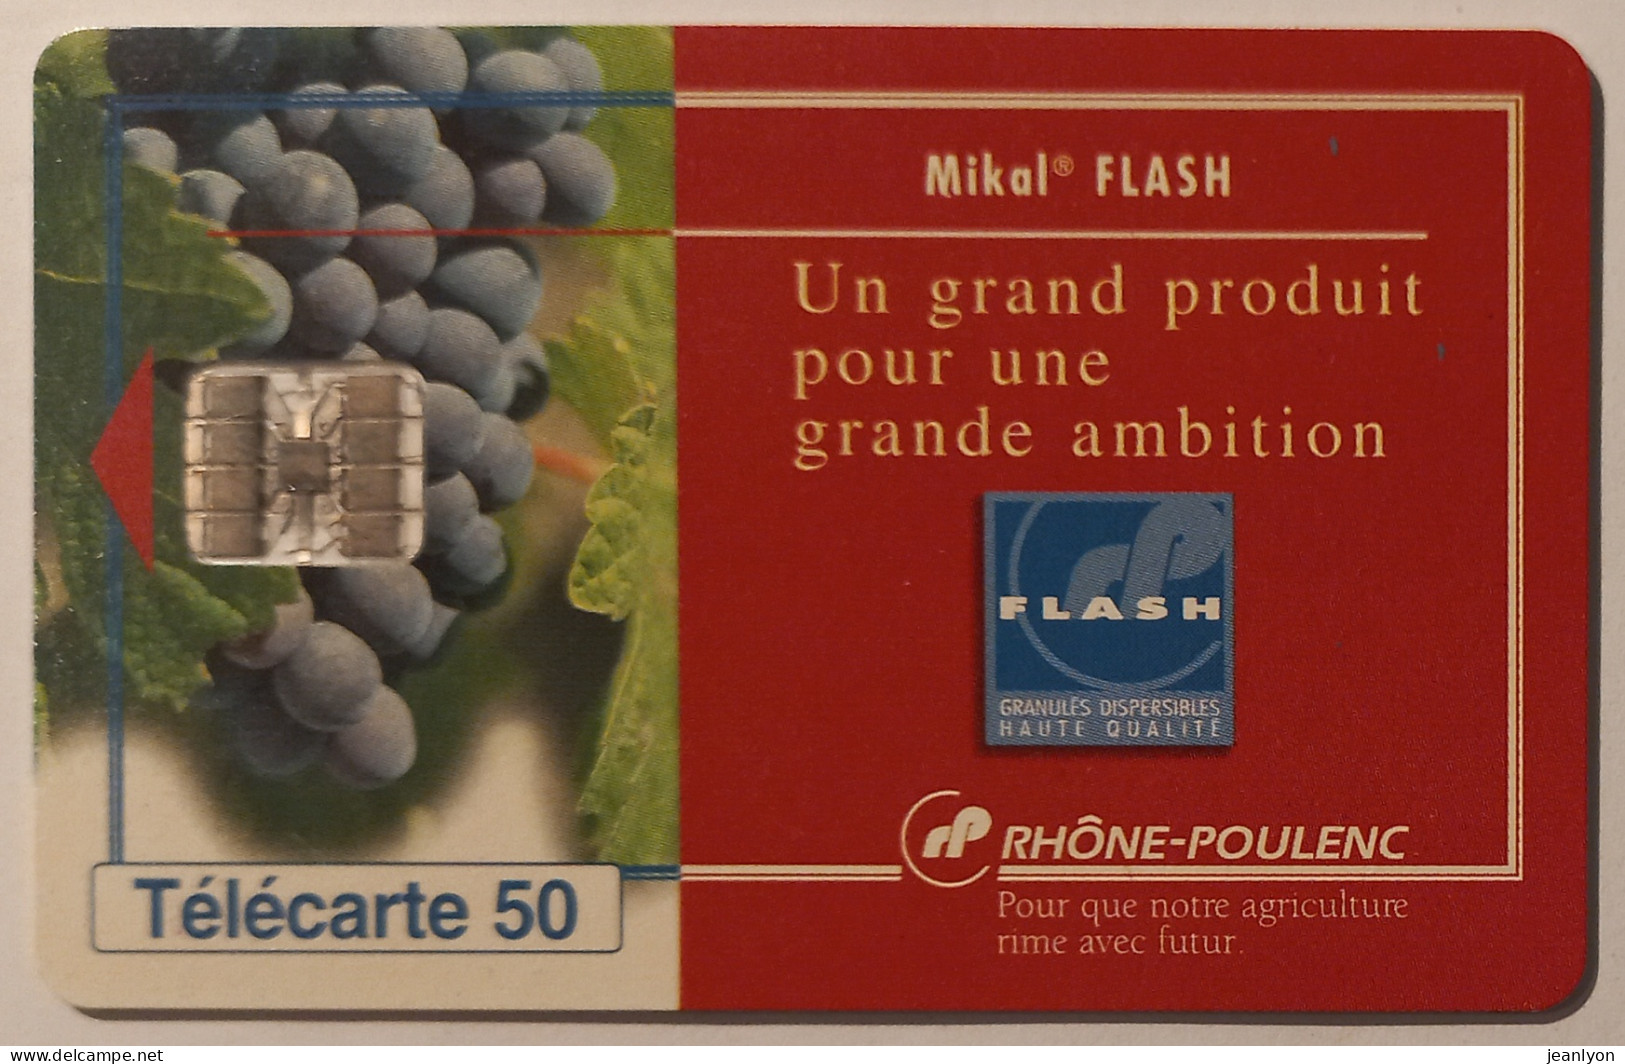 RHONE POULENC - MIKAL FLASH - Raisin / Vigne / Vin - Télécarte 50 Privée Publique - 50 Unità  